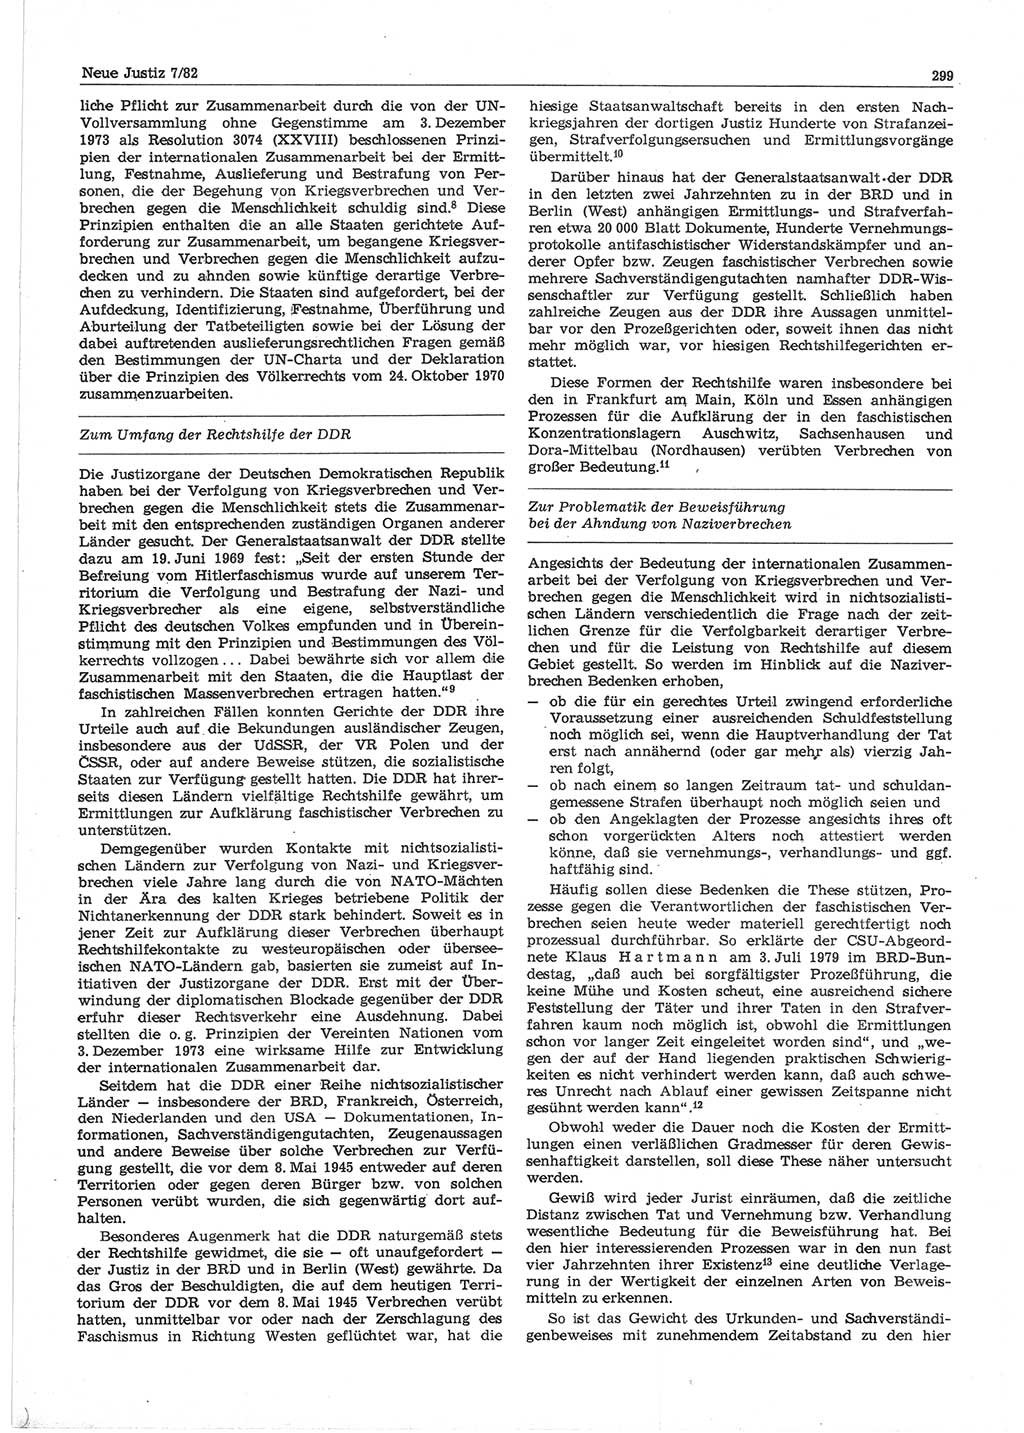 Neue Justiz (NJ), Zeitschrift für sozialistisches Recht und Gesetzlichkeit [Deutsche Demokratische Republik (DDR)], 36. Jahrgang 1982, Seite 299 (NJ DDR 1982, S. 299)